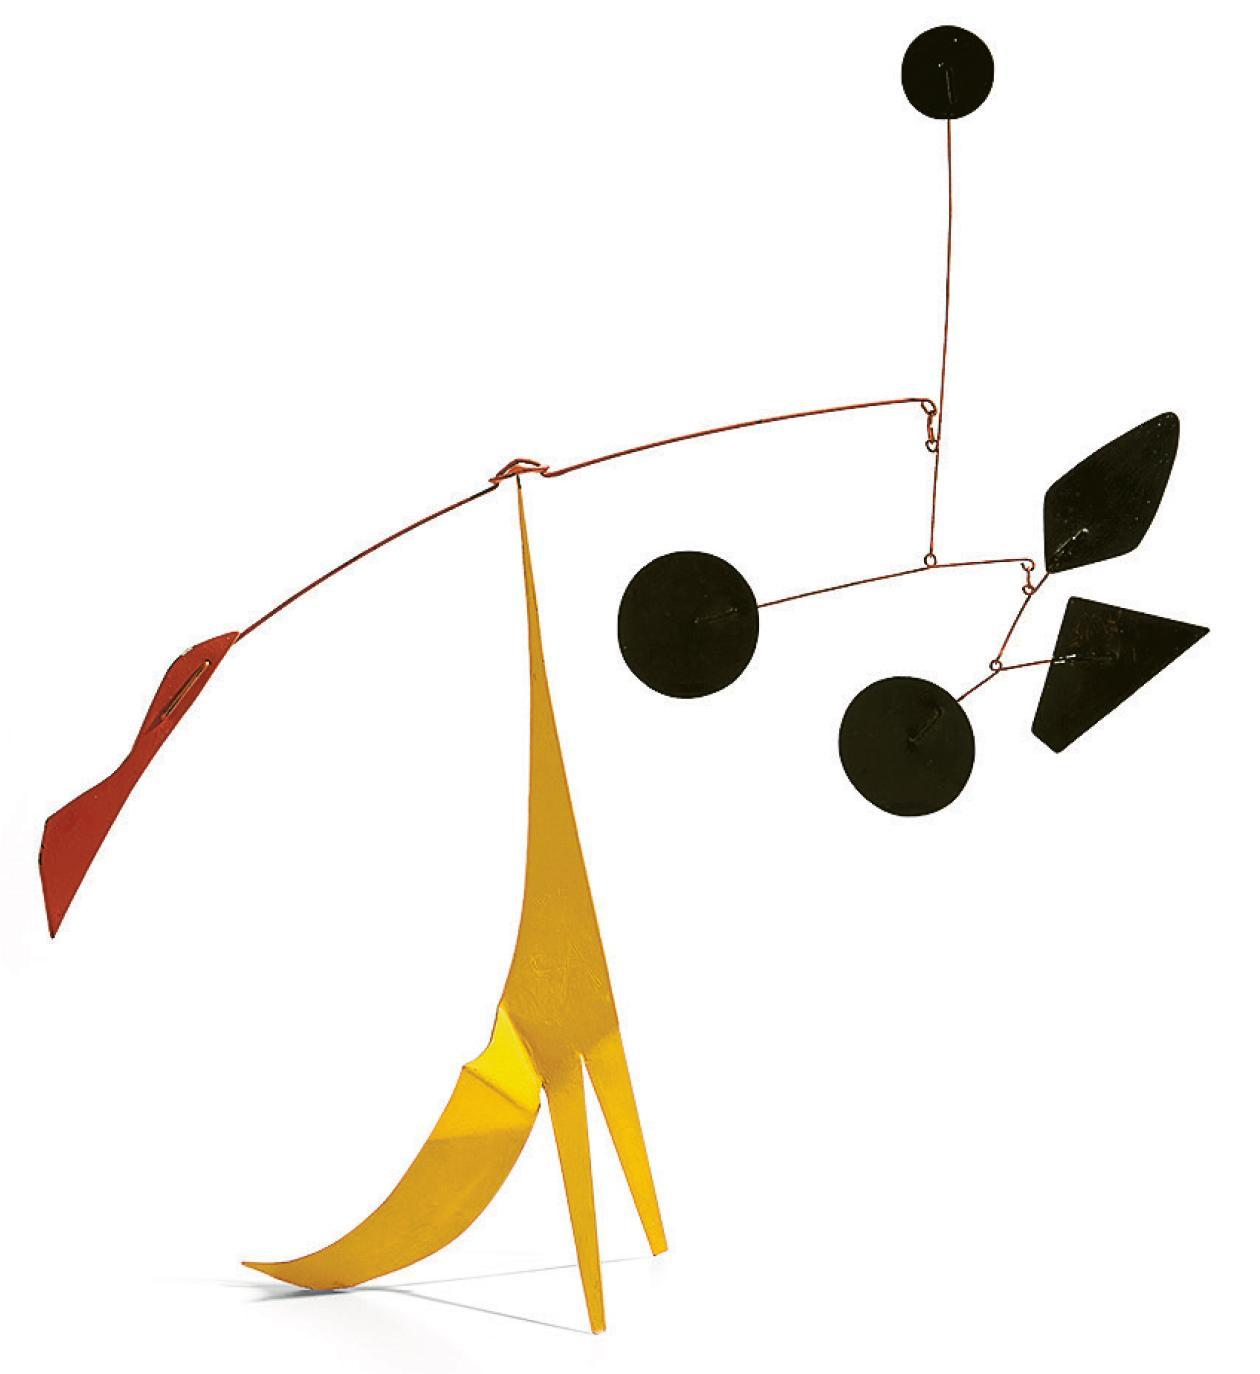 《一條黃色皺紋》--作者：Alexander Calder，創作年份：1975，規格：金屬片、鐵線、油漆（76.2×83.8×25.4厘米），特色：作品是可放置於平面的立式動態雕塑，採用藝術家常用的經典紅、黃及黑色配置，充滿趣味（拍賣行提供）